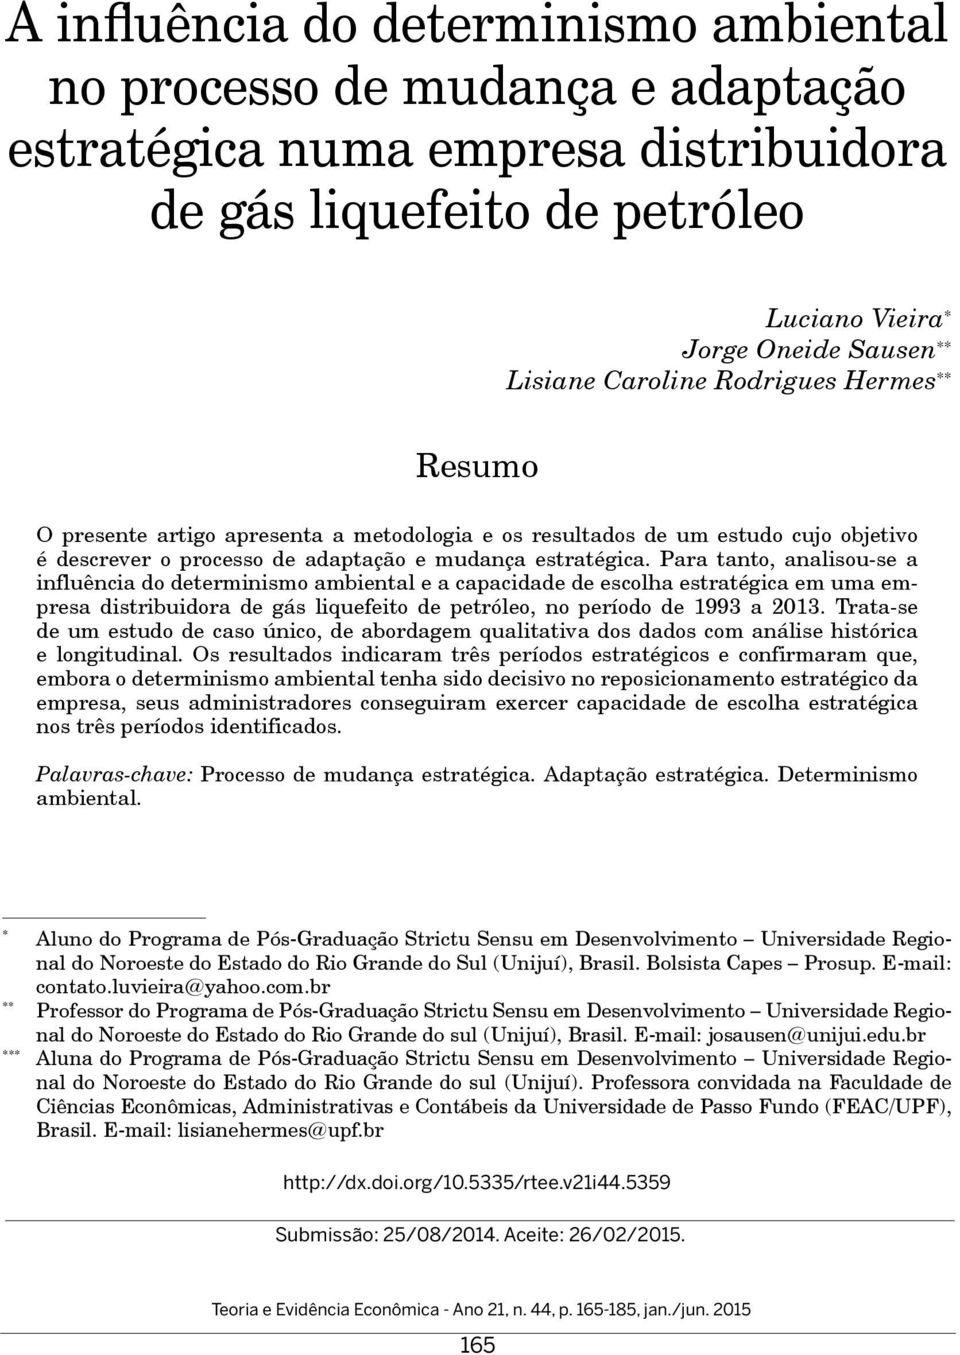 Para tanto, analisou-se a influência do determinismo ambiental e a capacidade de escolha estratégica em uma empresa distribuidora de gás liquefeito de petróleo, no período de 1993 a 2013.